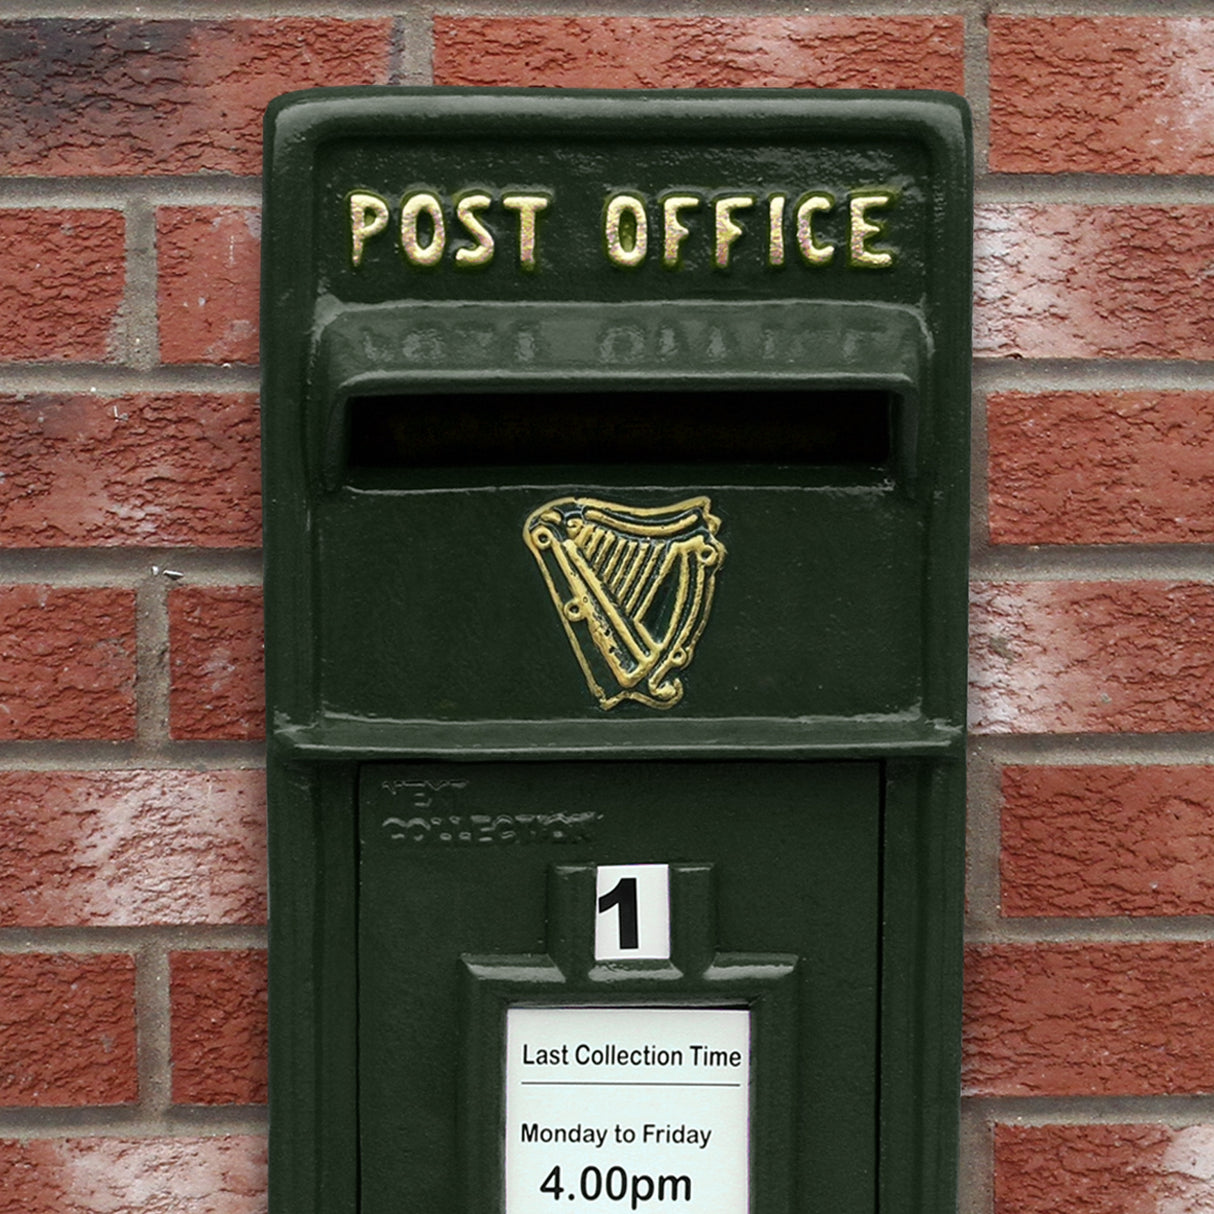 Buzón Royal Mail Verde Irlandés con Soporte de Suelo de Hierro Fundido y Montaje de Pared